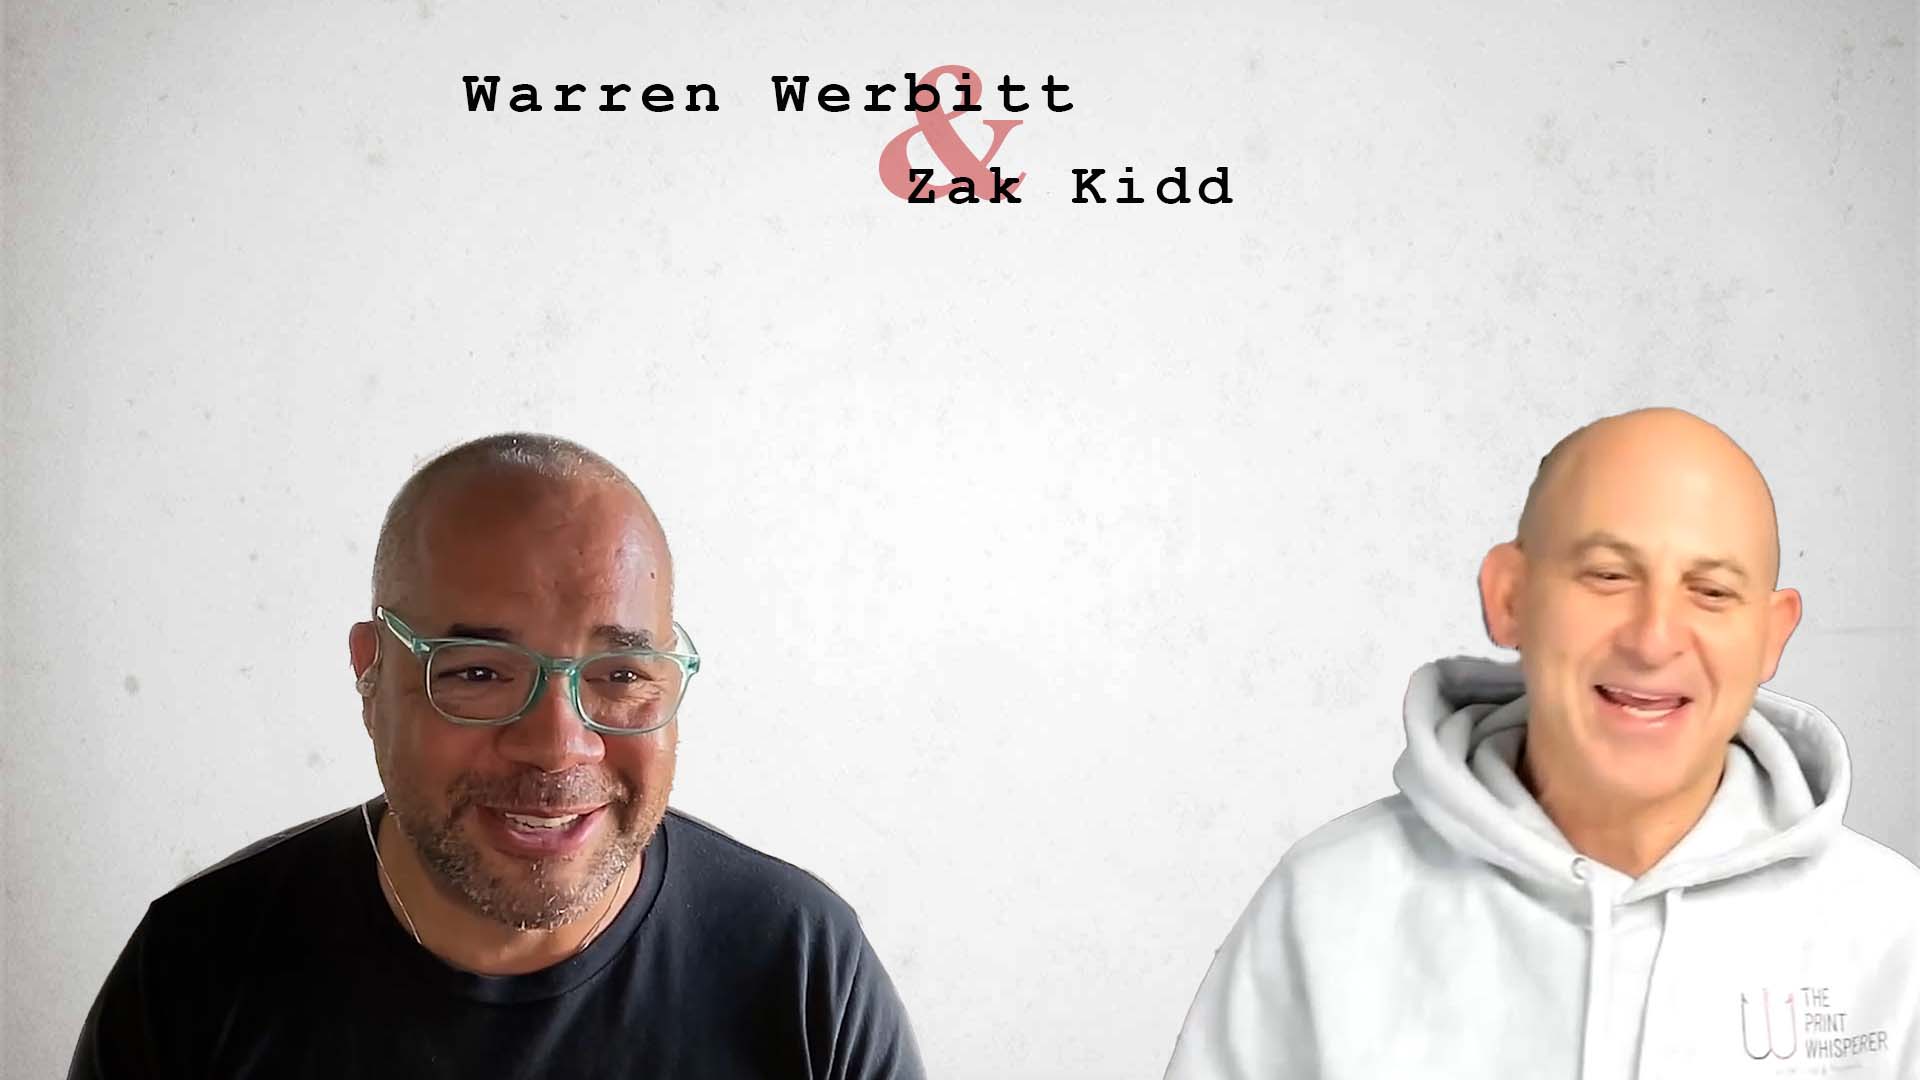 Video preview: Warren Werbitt Talks New AI Technology with Zak Kidd of AskHuman